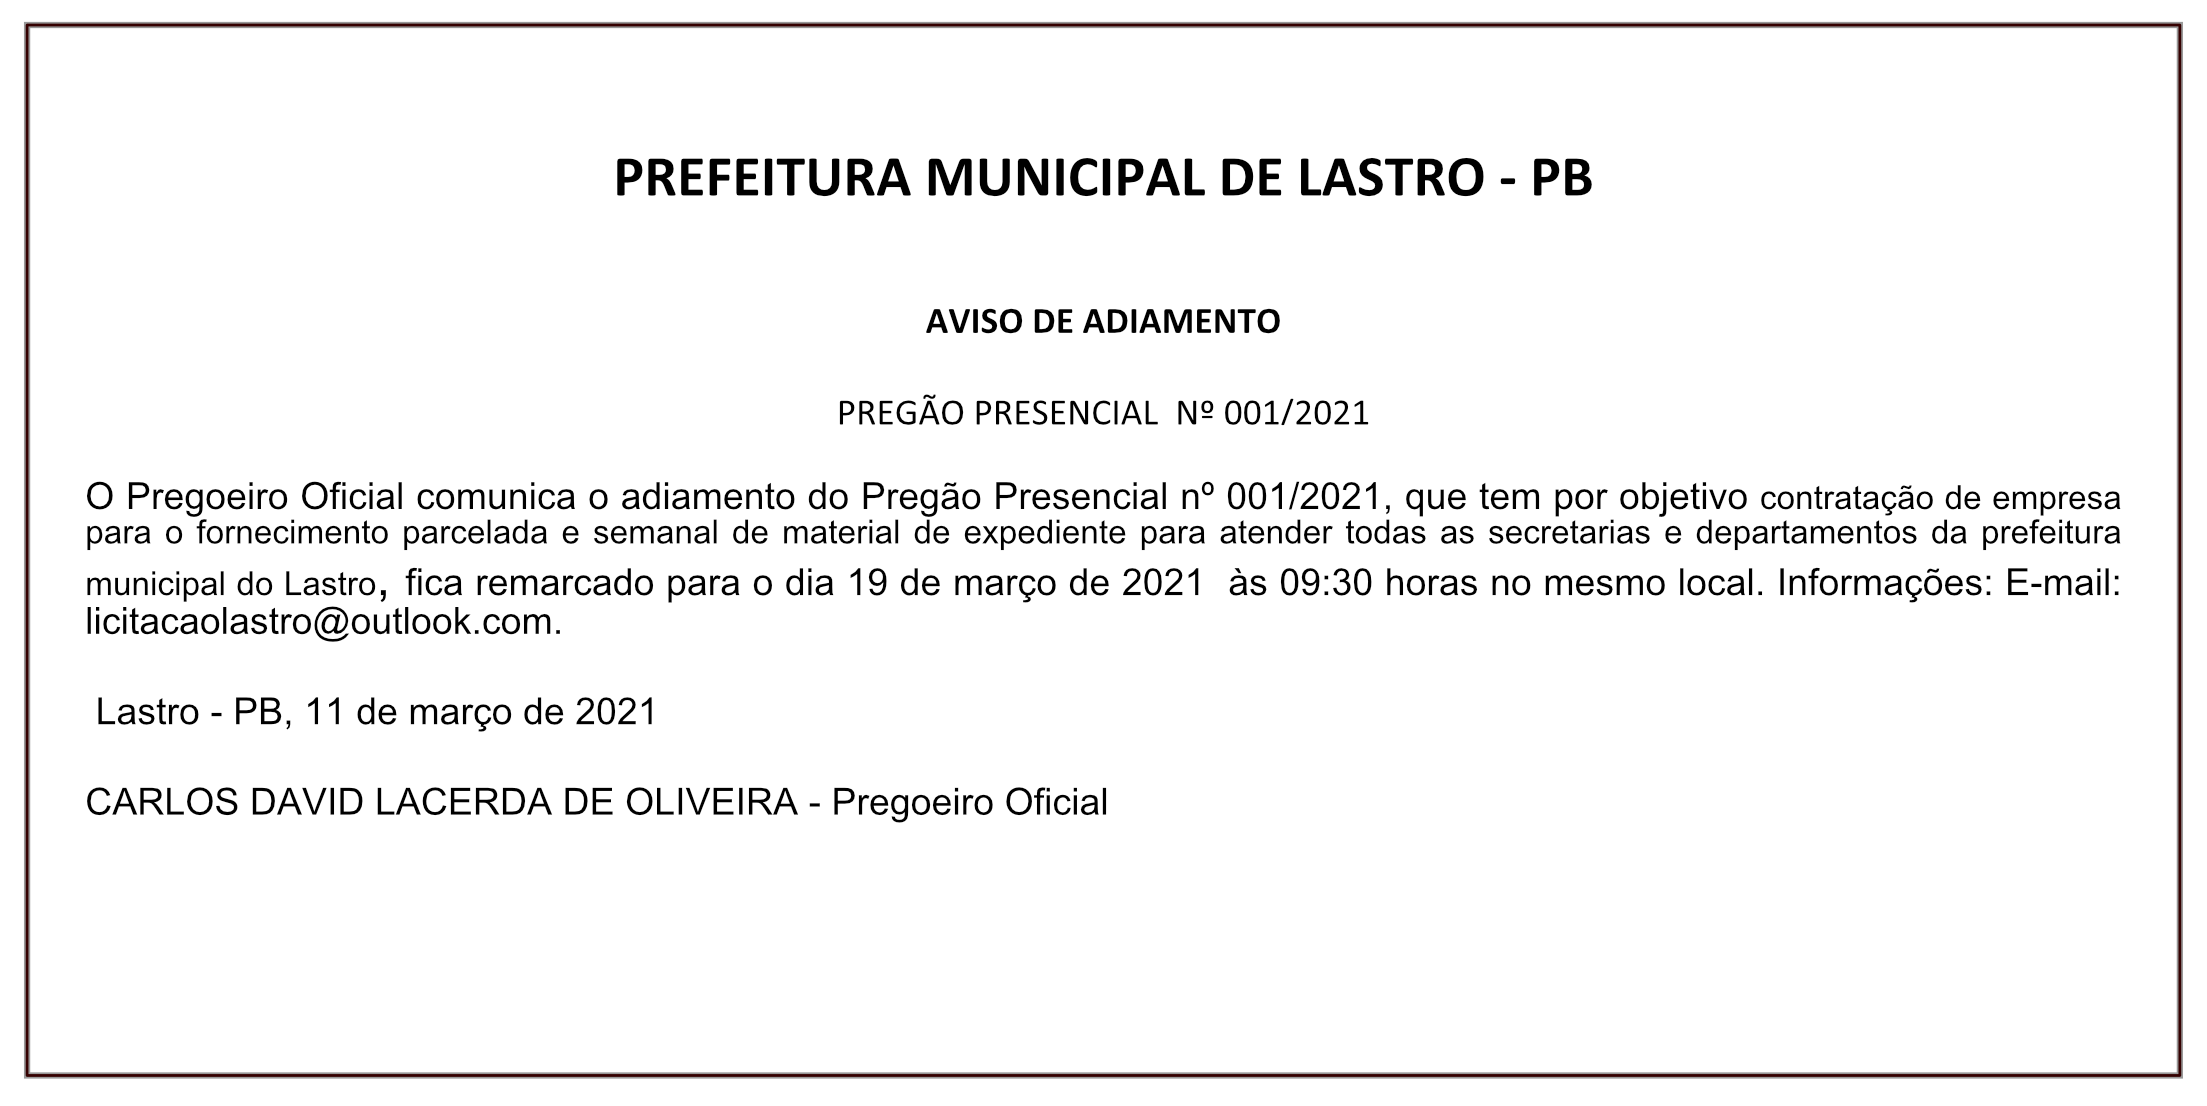 PREFEITURA MUNICIPAL DO LASTRO – AVISO DE ADIAMENTO – PREGÃO PRESENCIAL Nº 001/2021